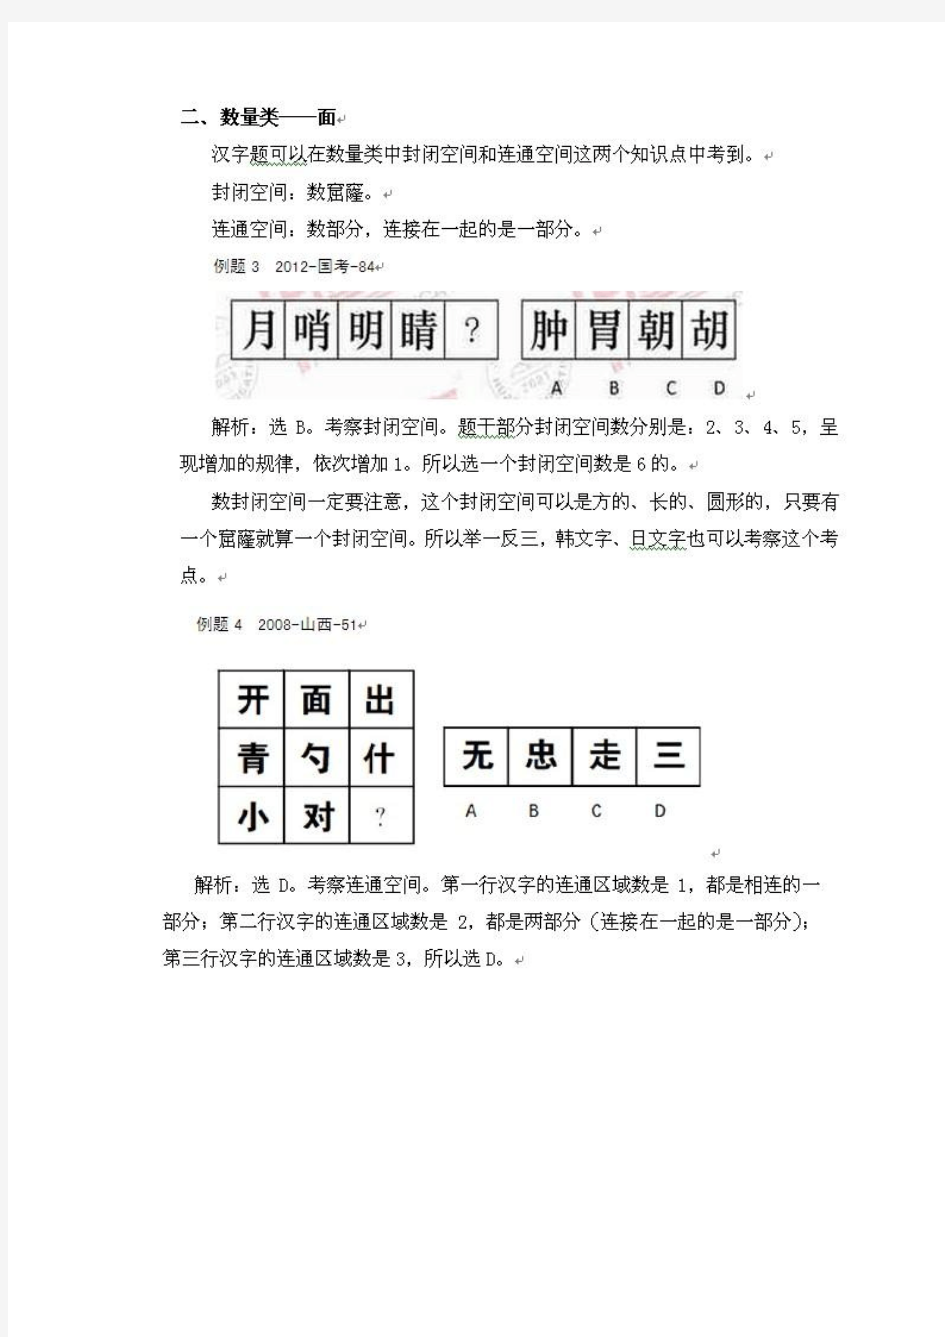 2013年国家公务员考试行测汉字图形推理题总结